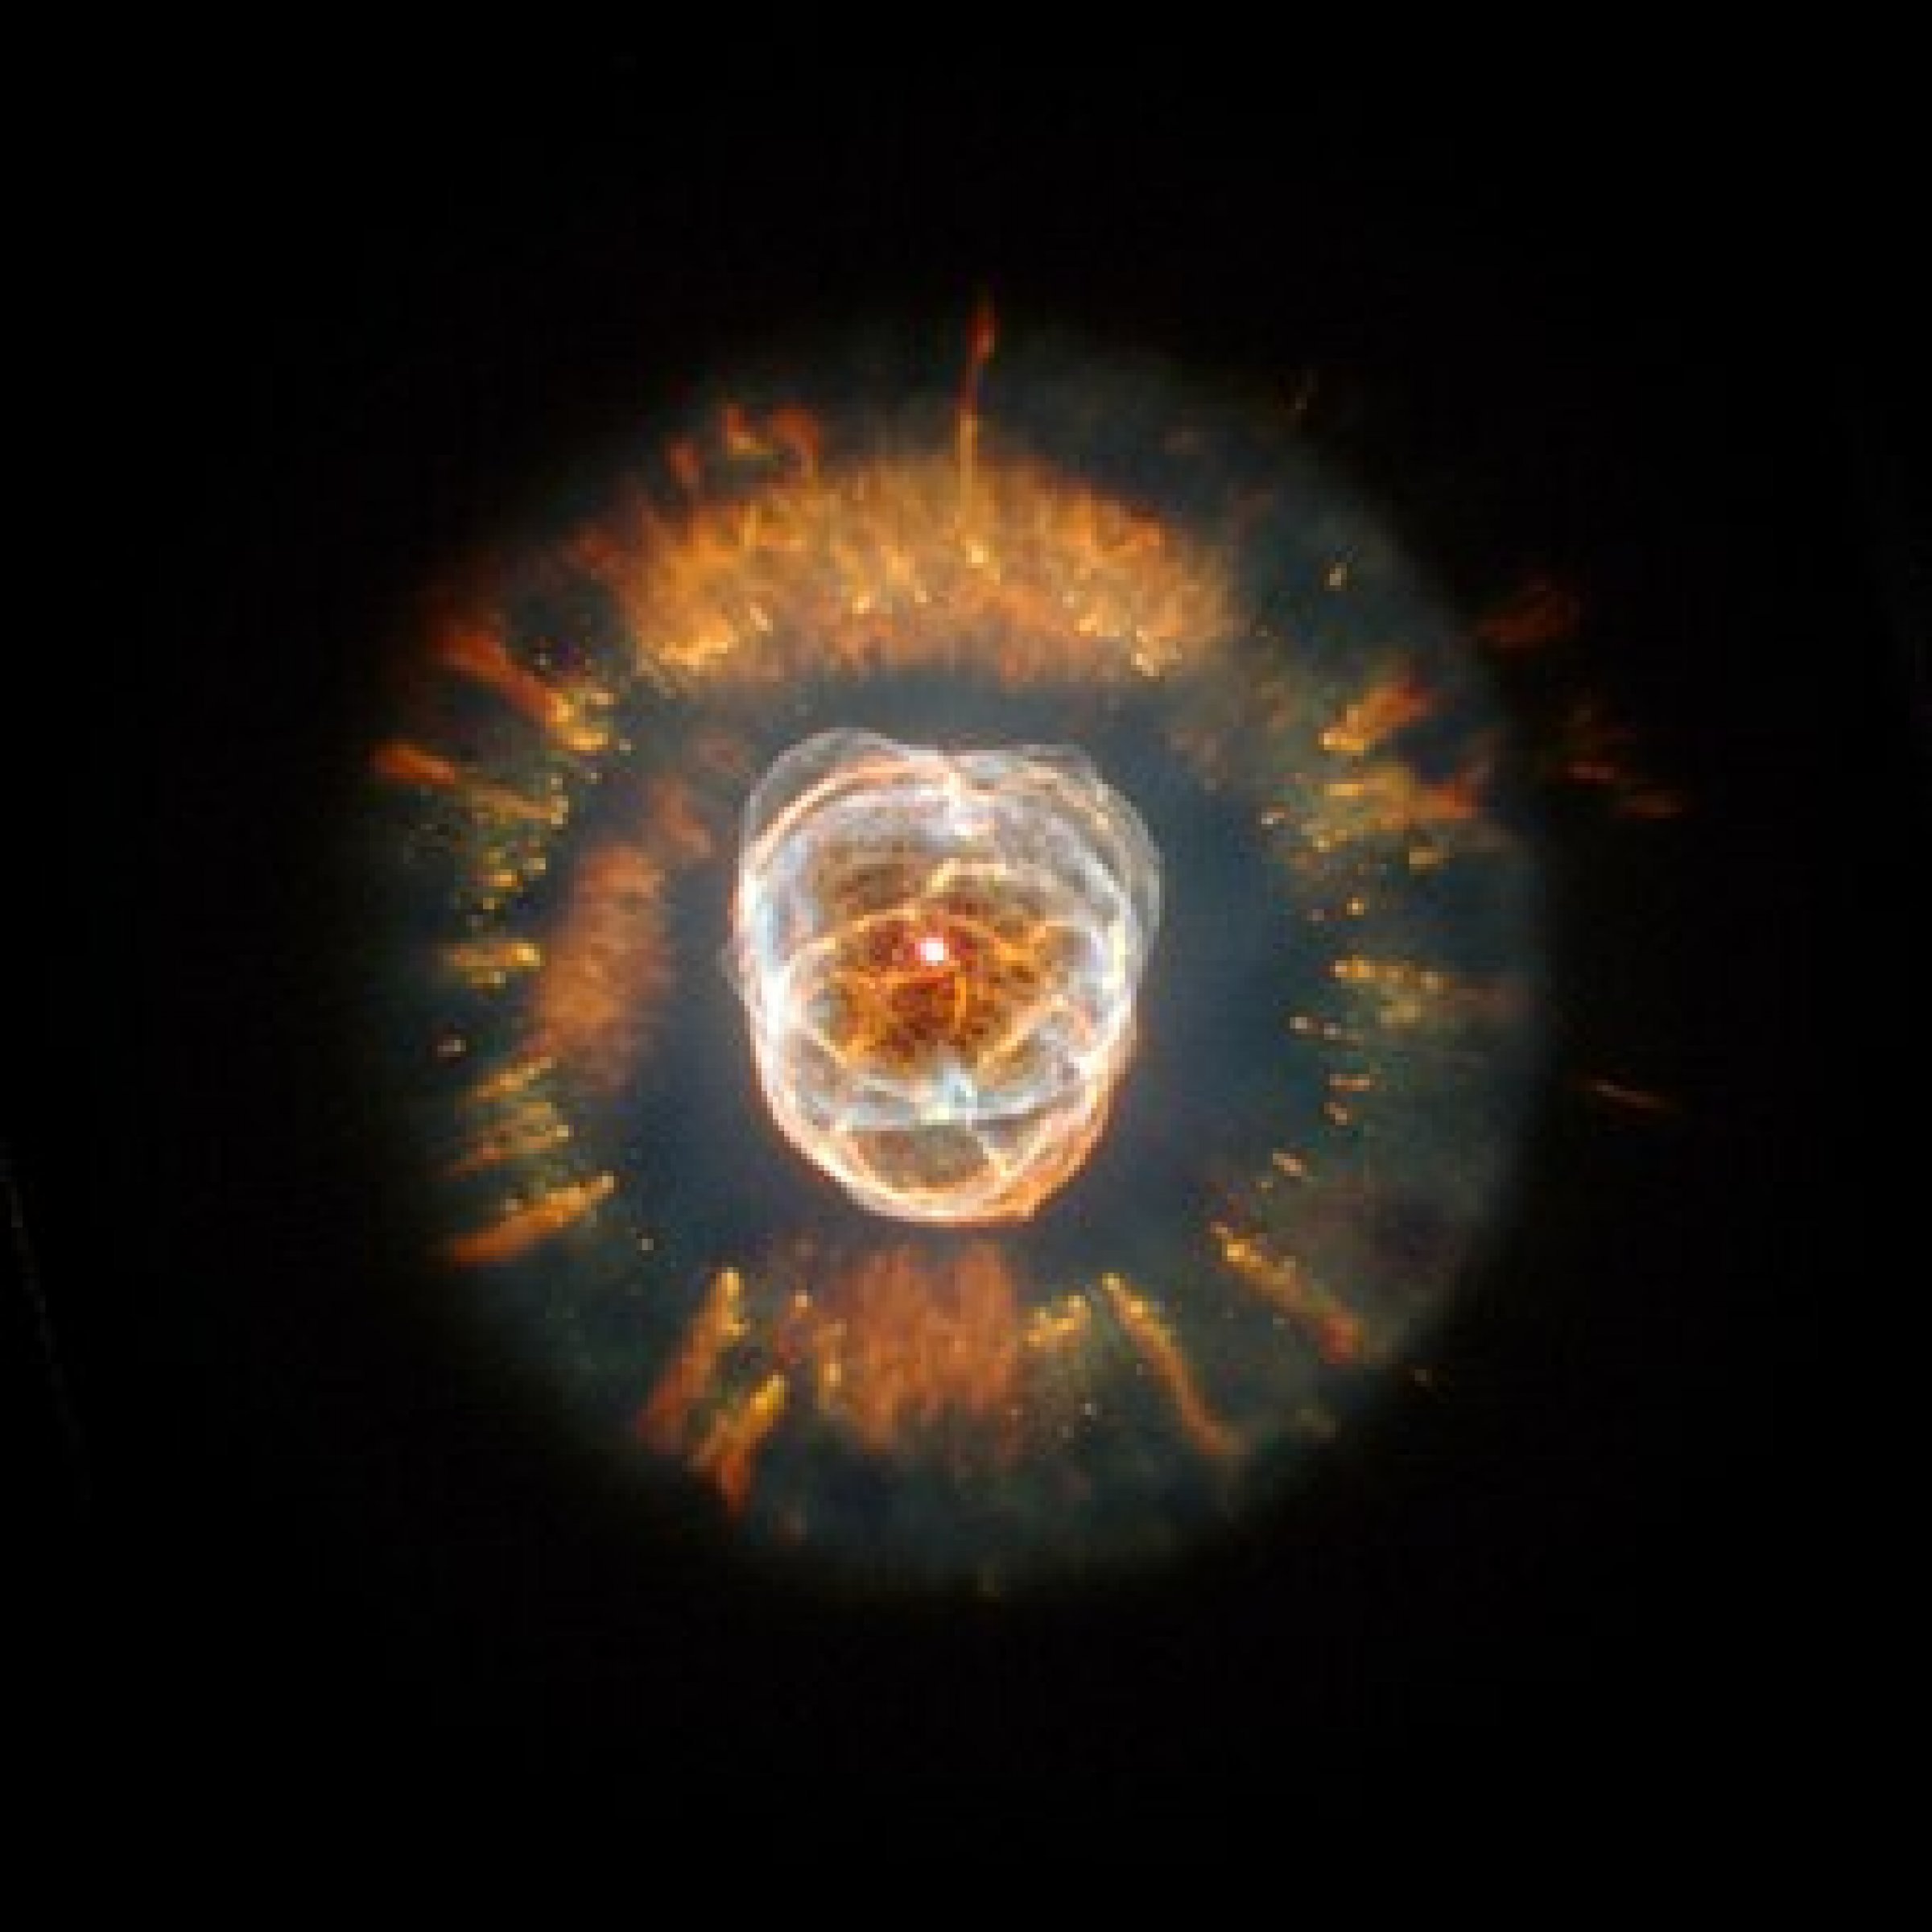 White Dwarf (NASA, ESA, Andrew Fruchter) 